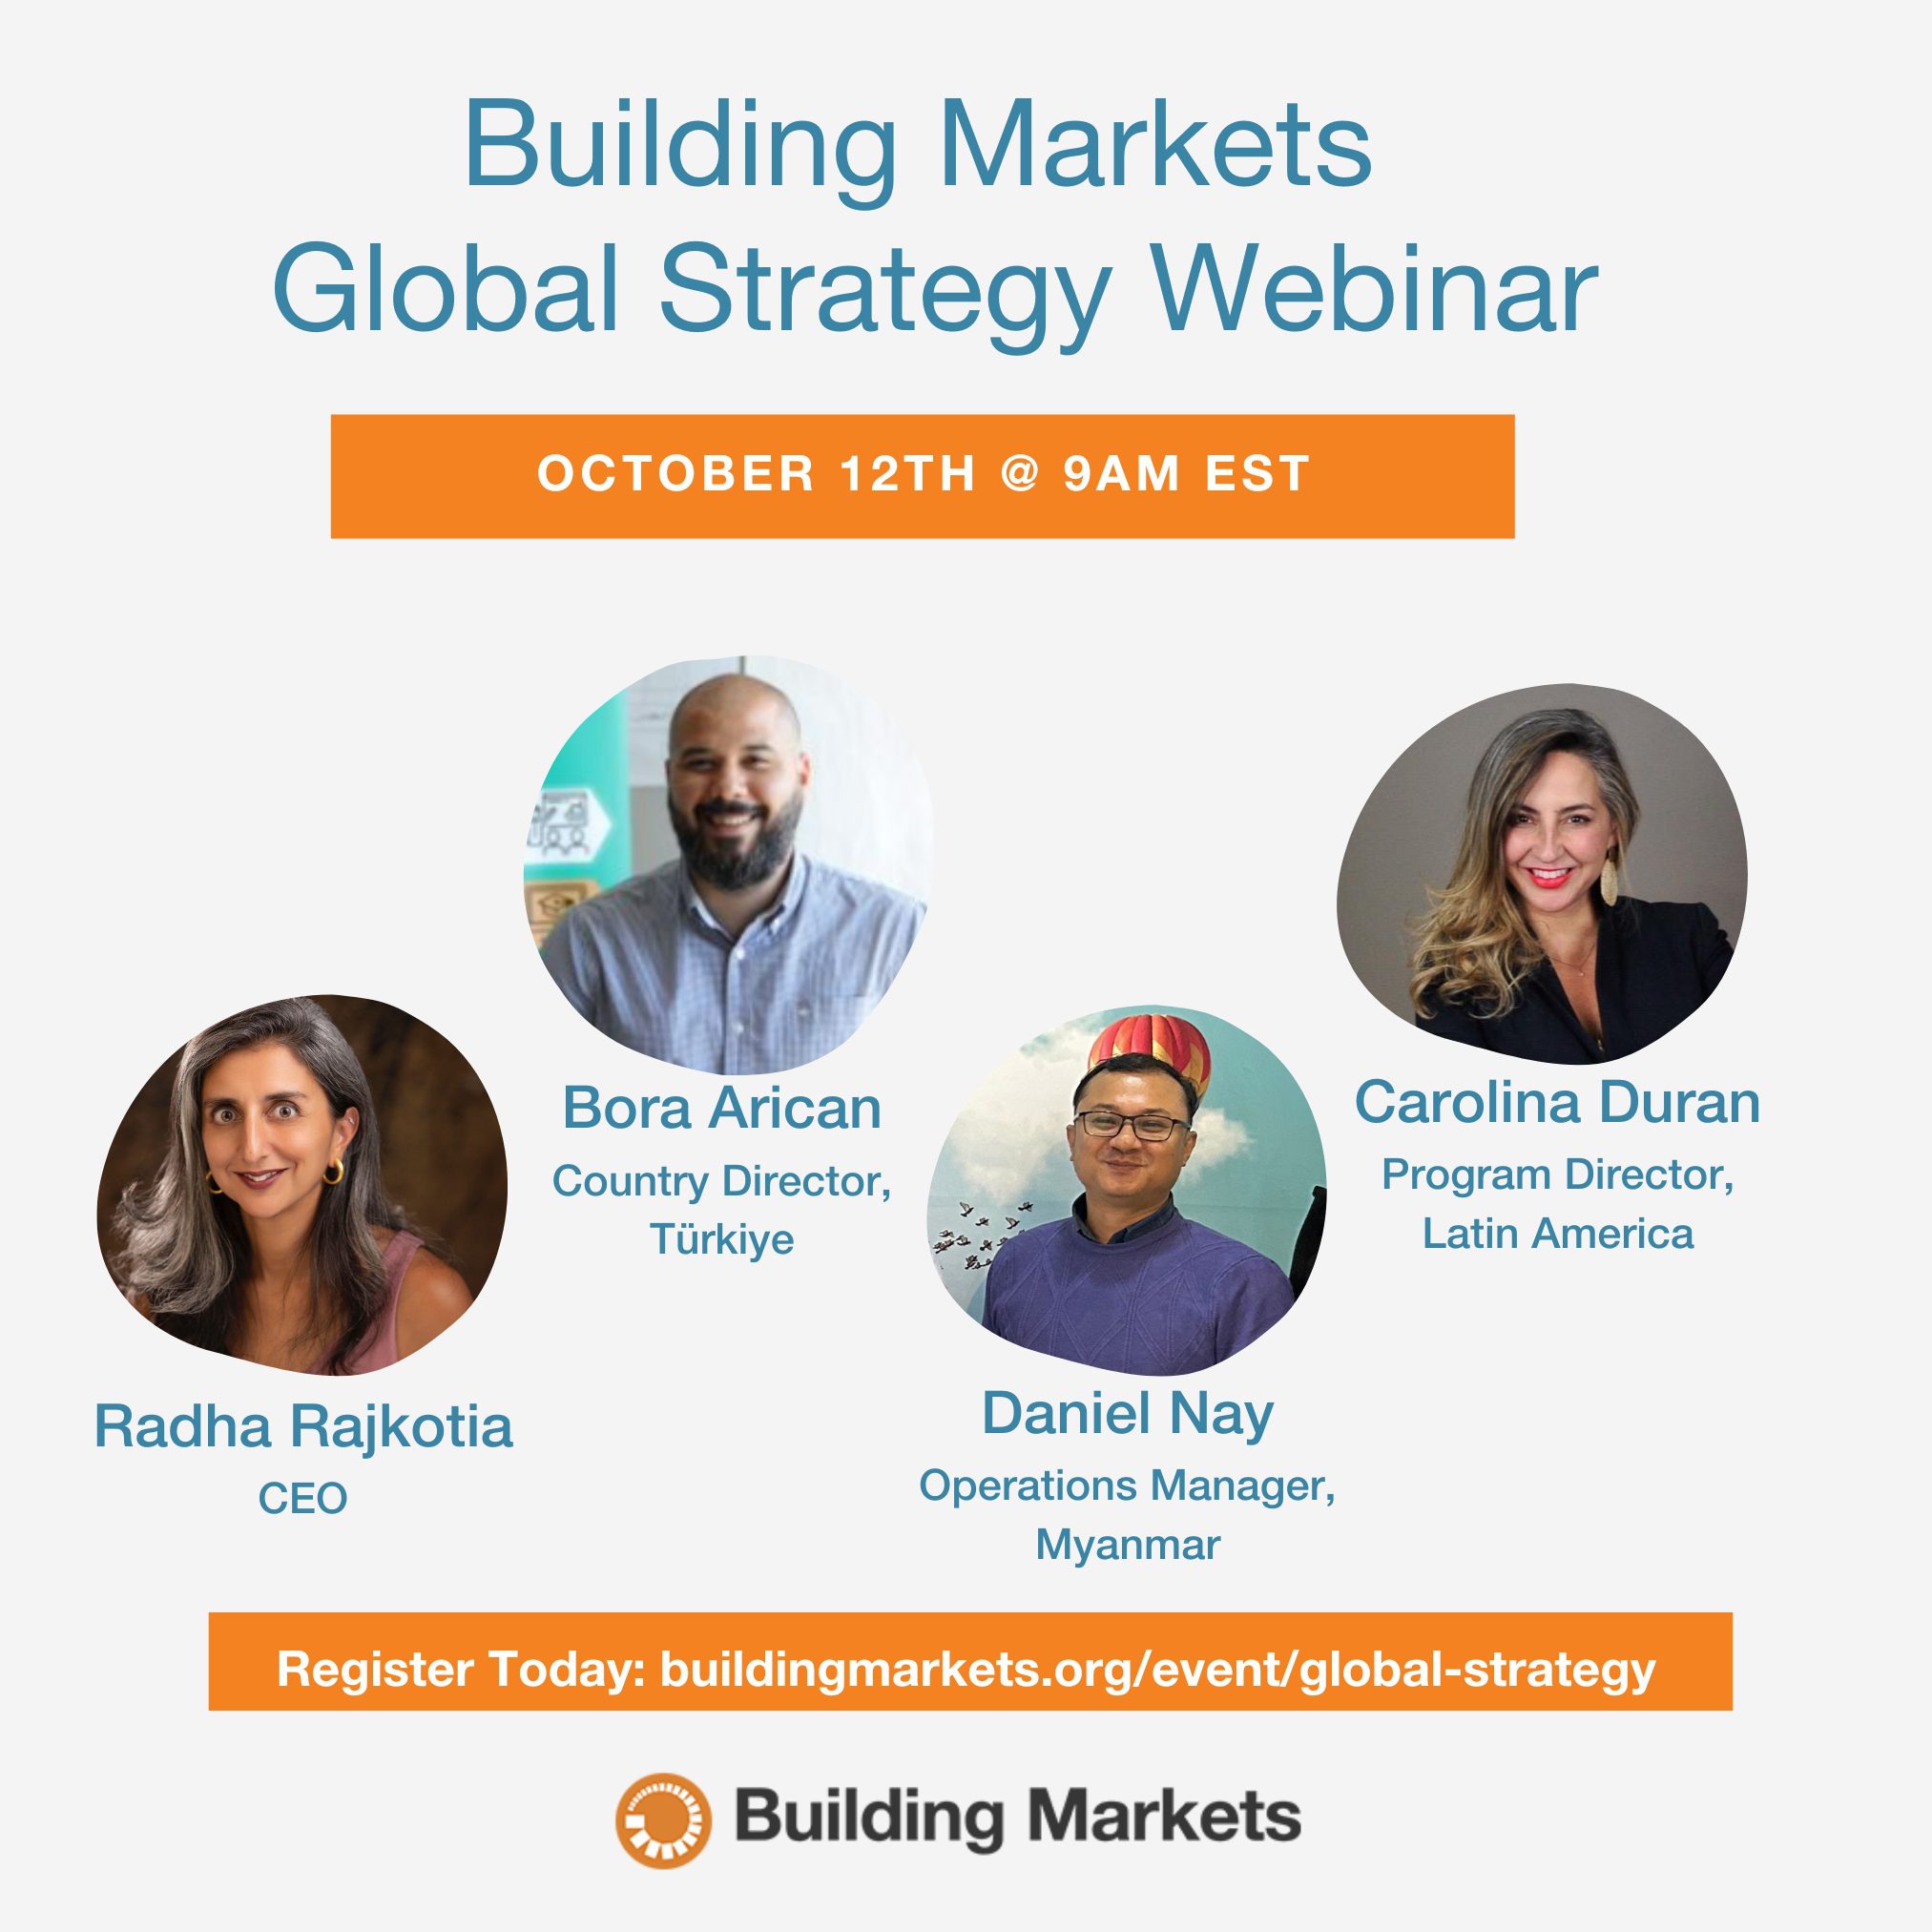 Building Markets’ Global Strategy Webinar